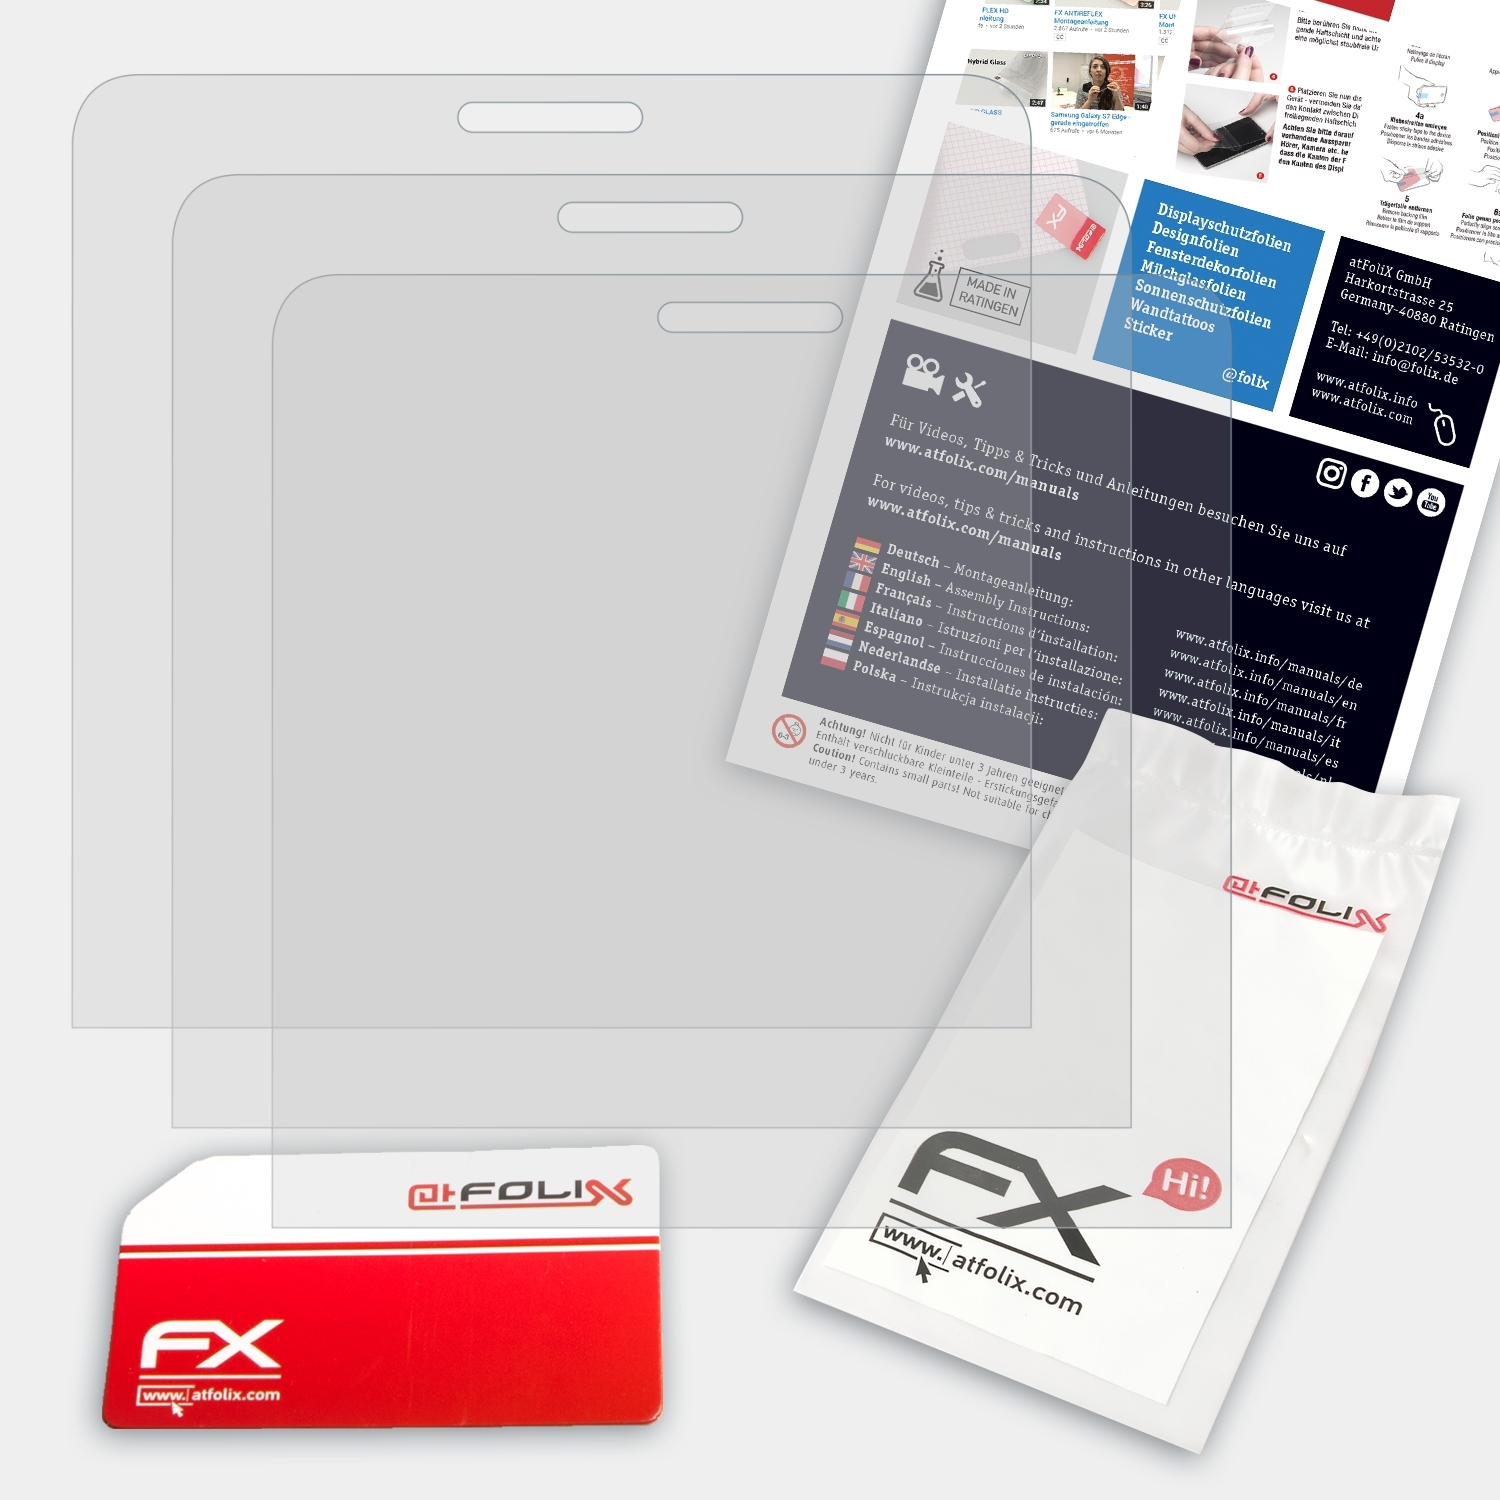 ATFOLIX 3x FX-Antireflex Nokia Asha Displayschutz(für 210)